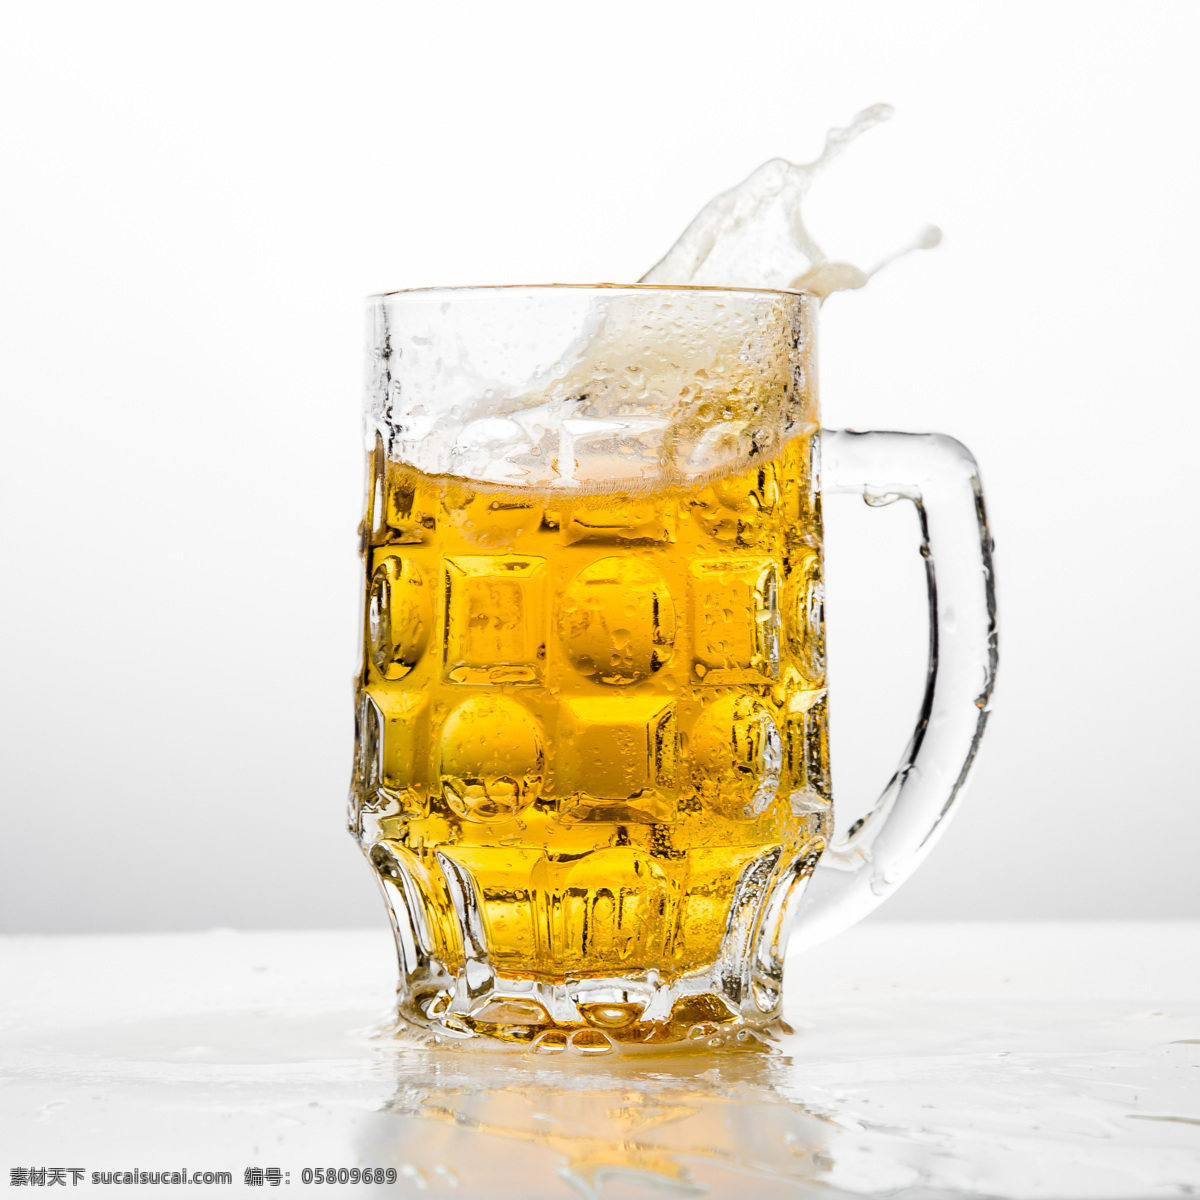 啤酒 啤酒杯 德国啤酒 扎啤 啤酒泡沫 一杯啤酒 酒杯 纯麦啤酒 啤酒原浆 啤酒摄影图 餐饮美食 饮料酒水